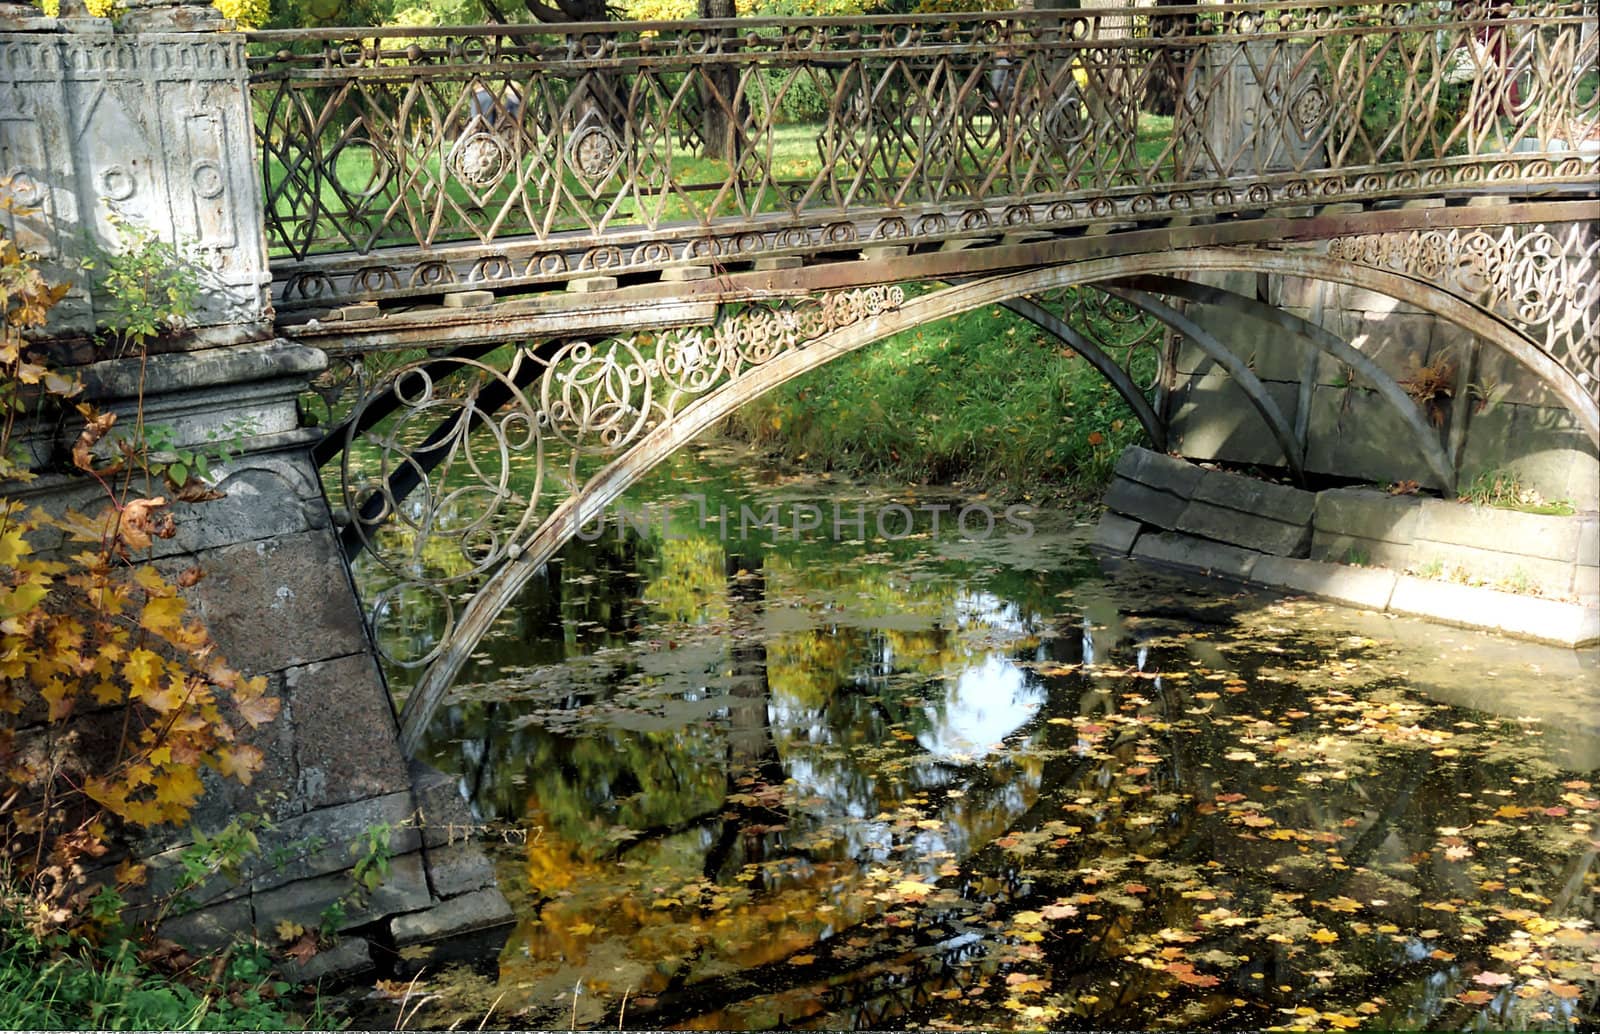 Old metal bridge and fallen leaves under it